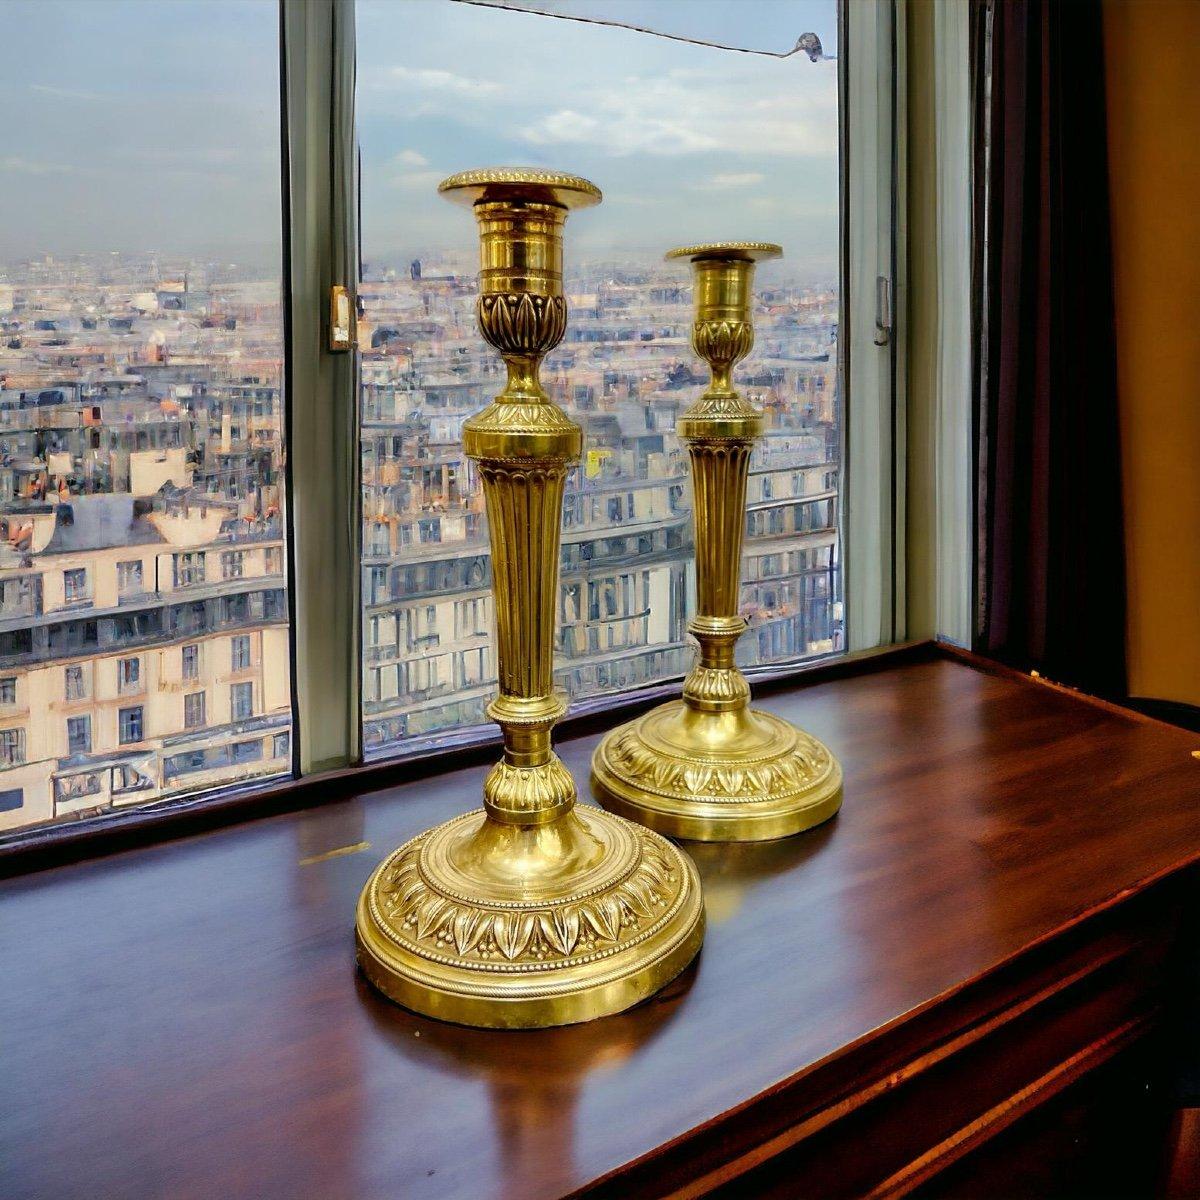 Dieses einzigartige Paar vergoldeter Bronzeleuchter aus dem 19. Jahrhundert aus der Zeit der bourbonischen Restauration in Frankreich (1814 - 1830) zeichnet sich durch ausgefallene Palmettenverzierungen und kannelierte Stiele aus. 

Mit einer Höhe